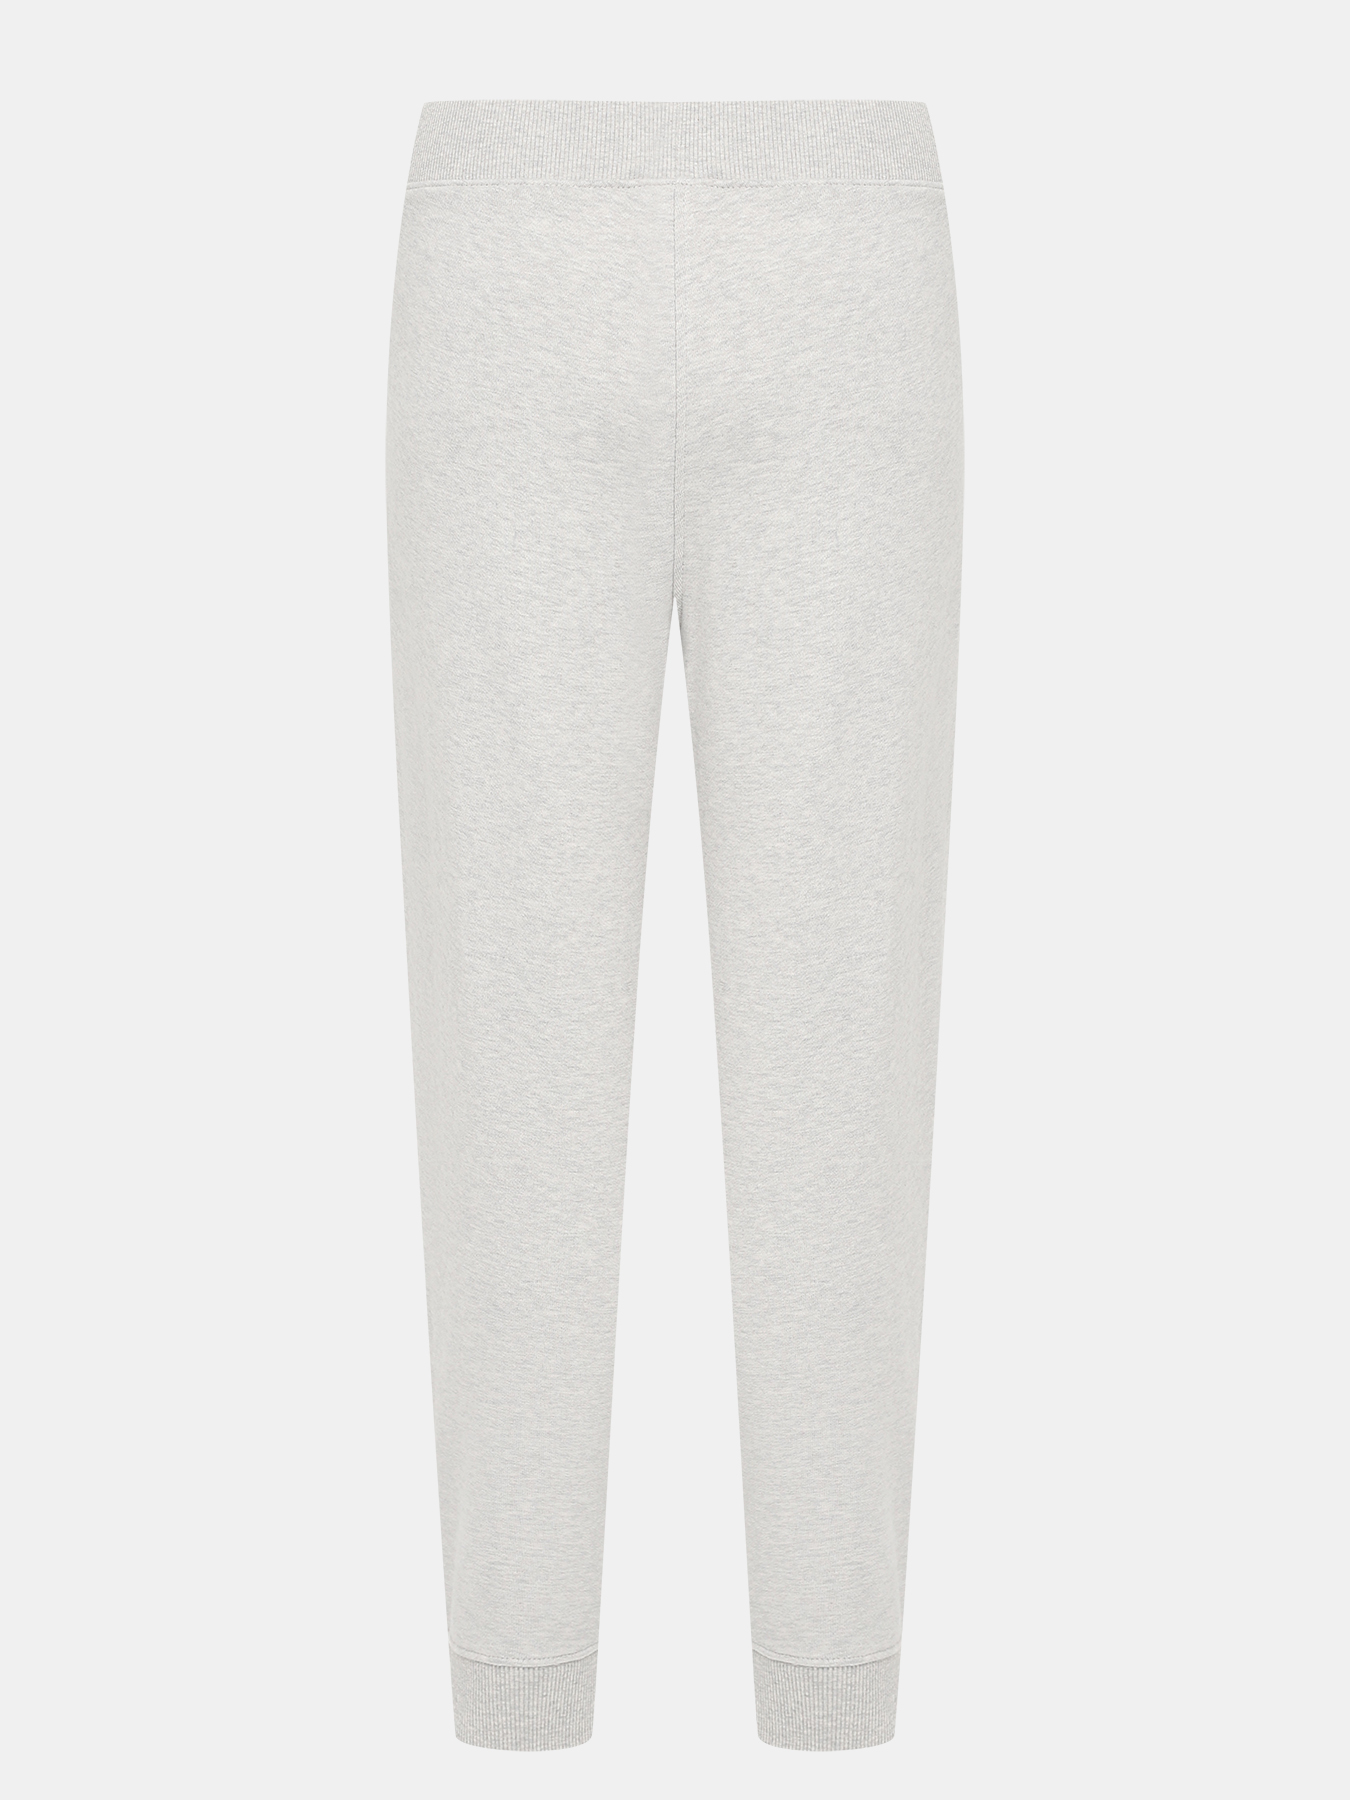 Спортивные брюки Ejoy BOSS 424173-041, цвет серый, размер 40-42 - фото 3